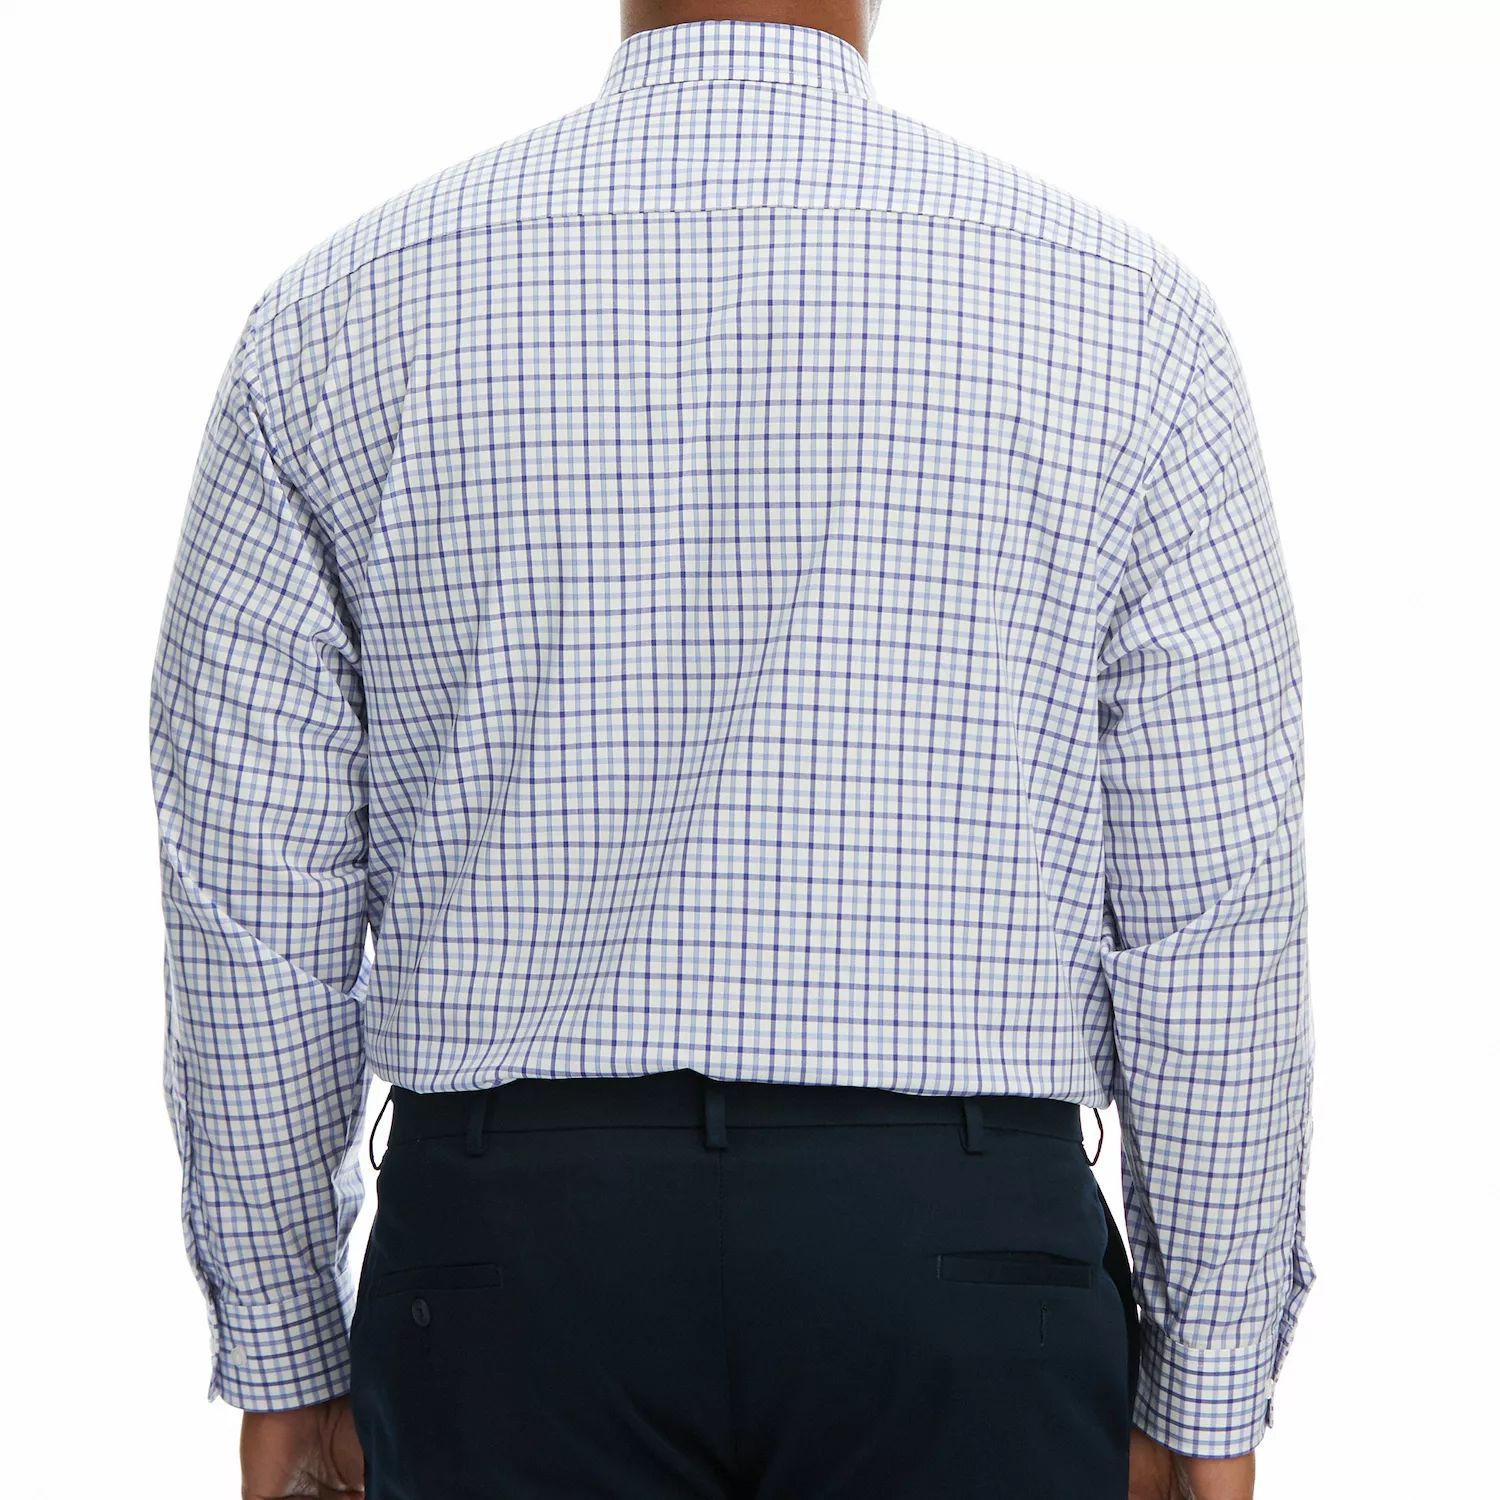 Комфортная классическая рубашка Big & Tall премиум-класса, устойчивая к морщинам Haggar moderna double smartly bowl double blue s